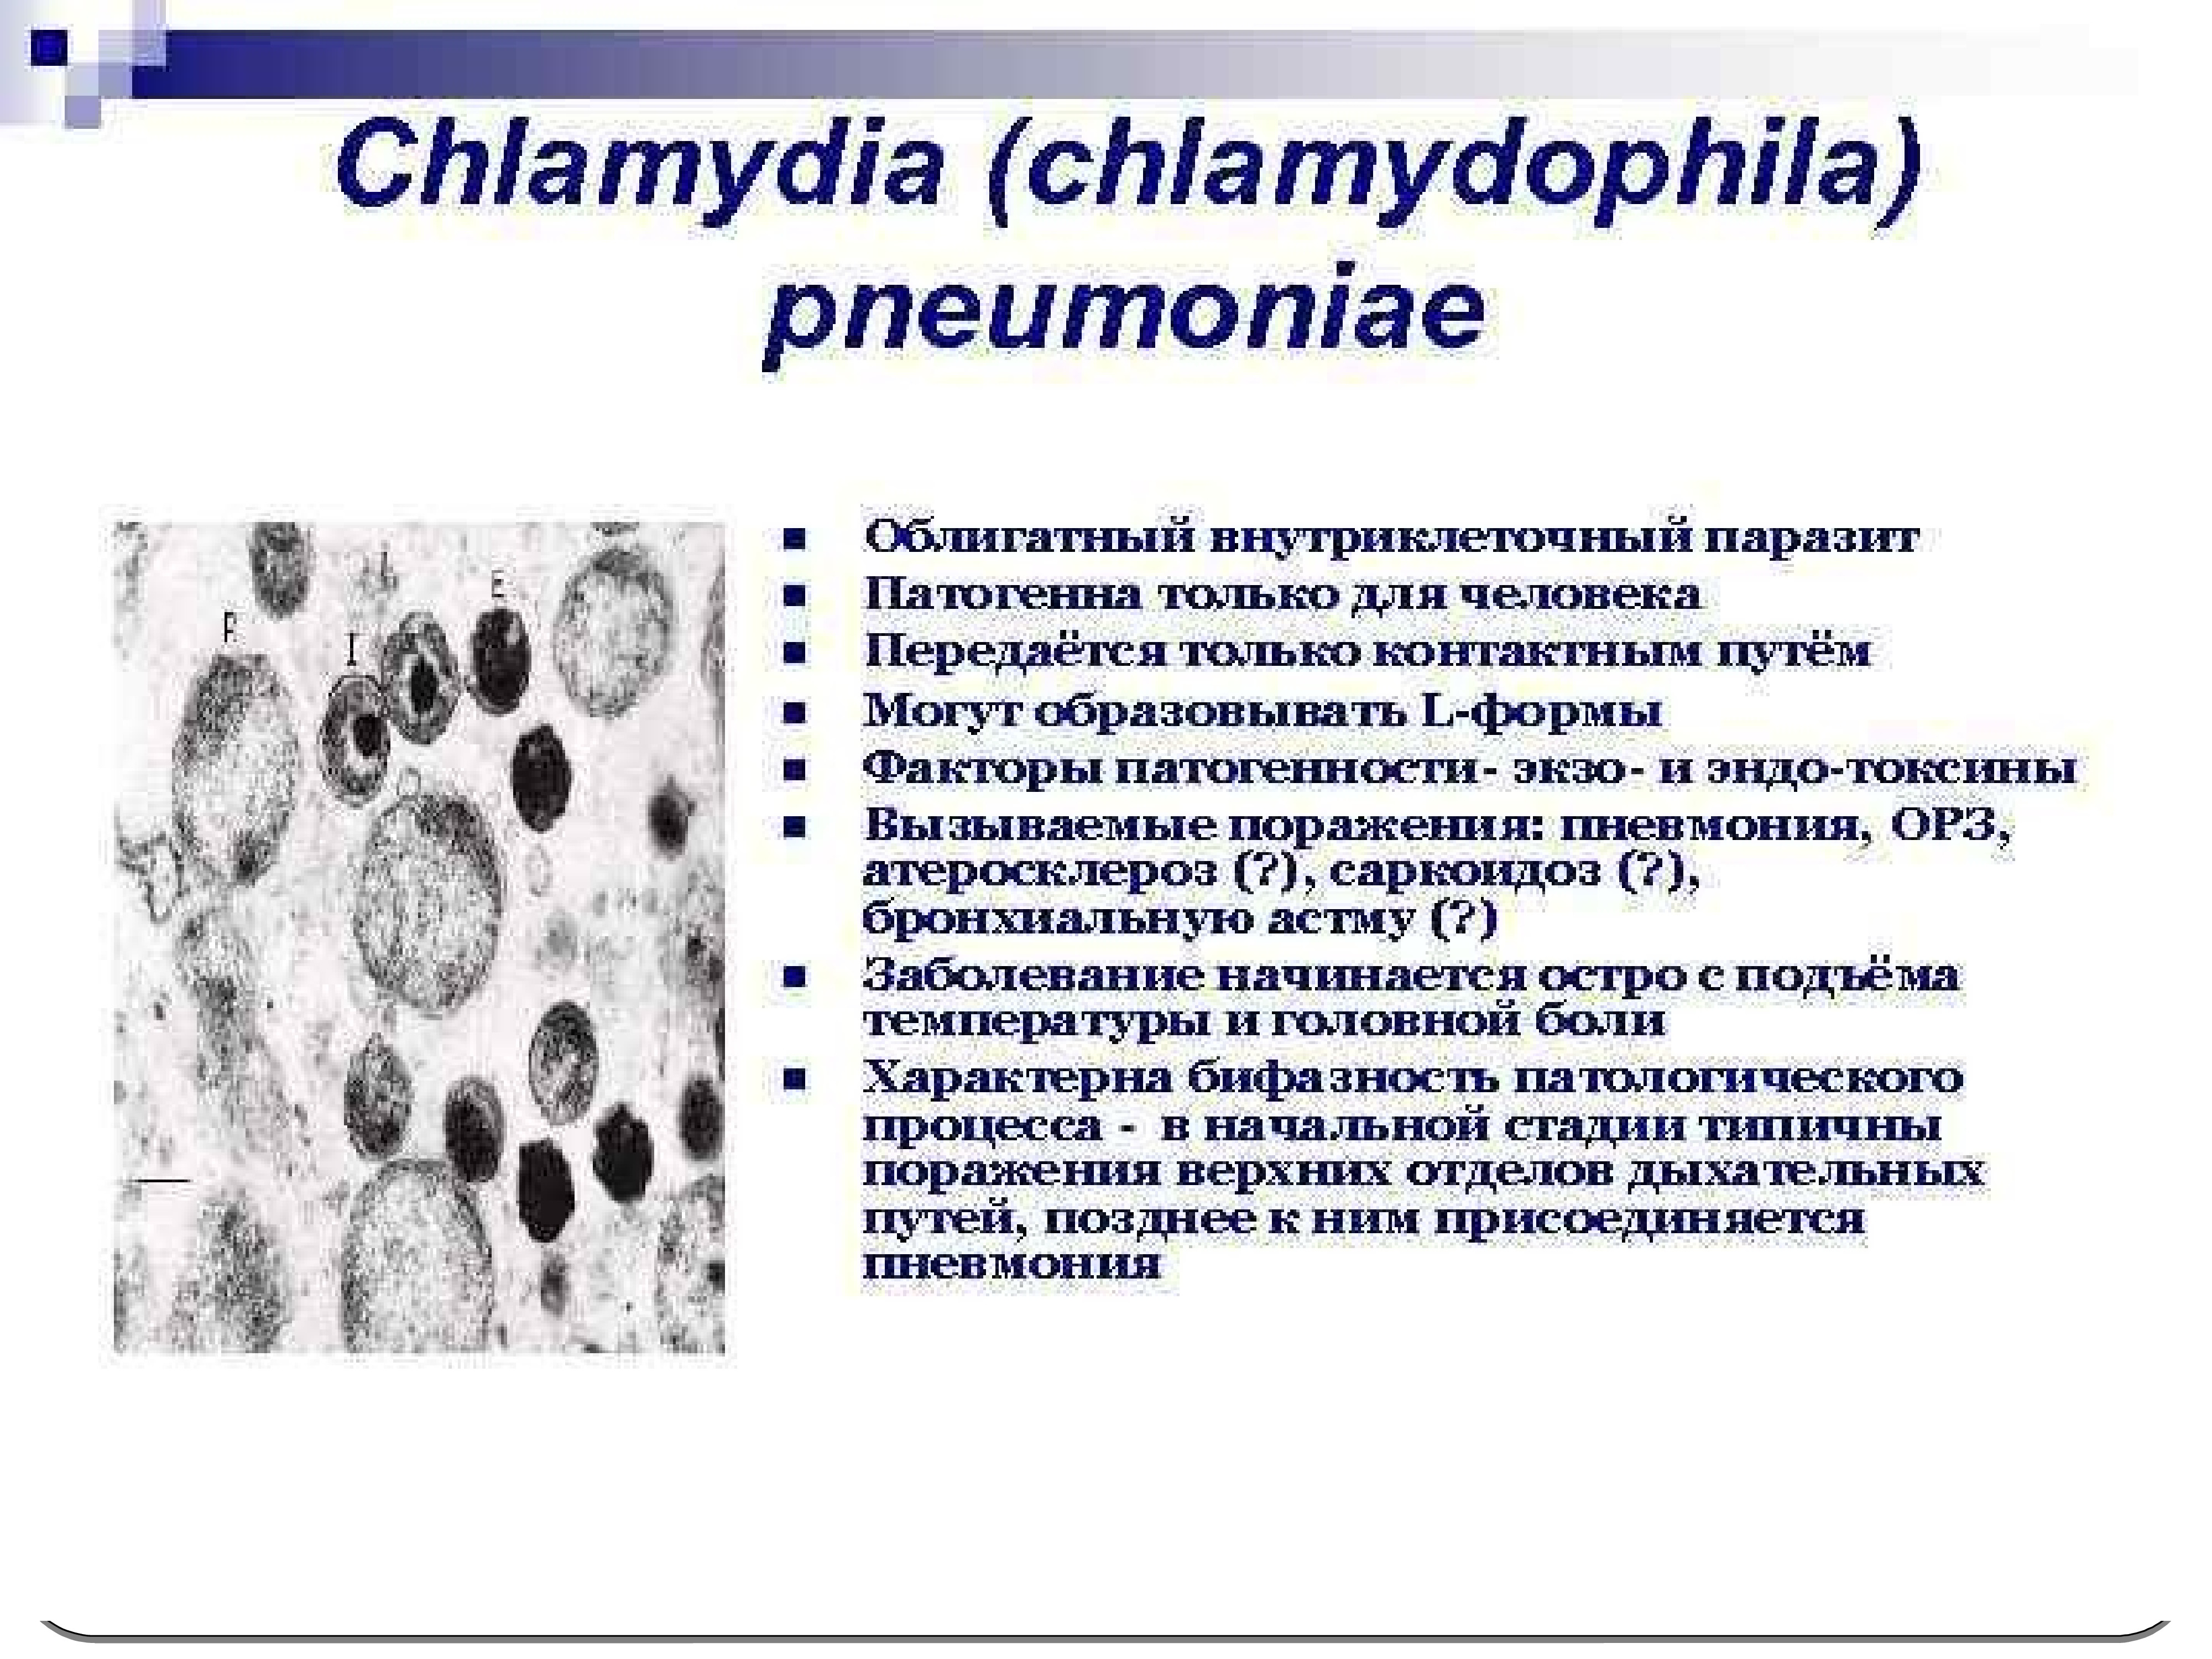 Хламидиоз возбудитель инфекции. Chlamydia pneumoniae микробиология токсины. Хламидии пневмонии факторы патогенности. Chlamydophila pneumoniae патогенность.